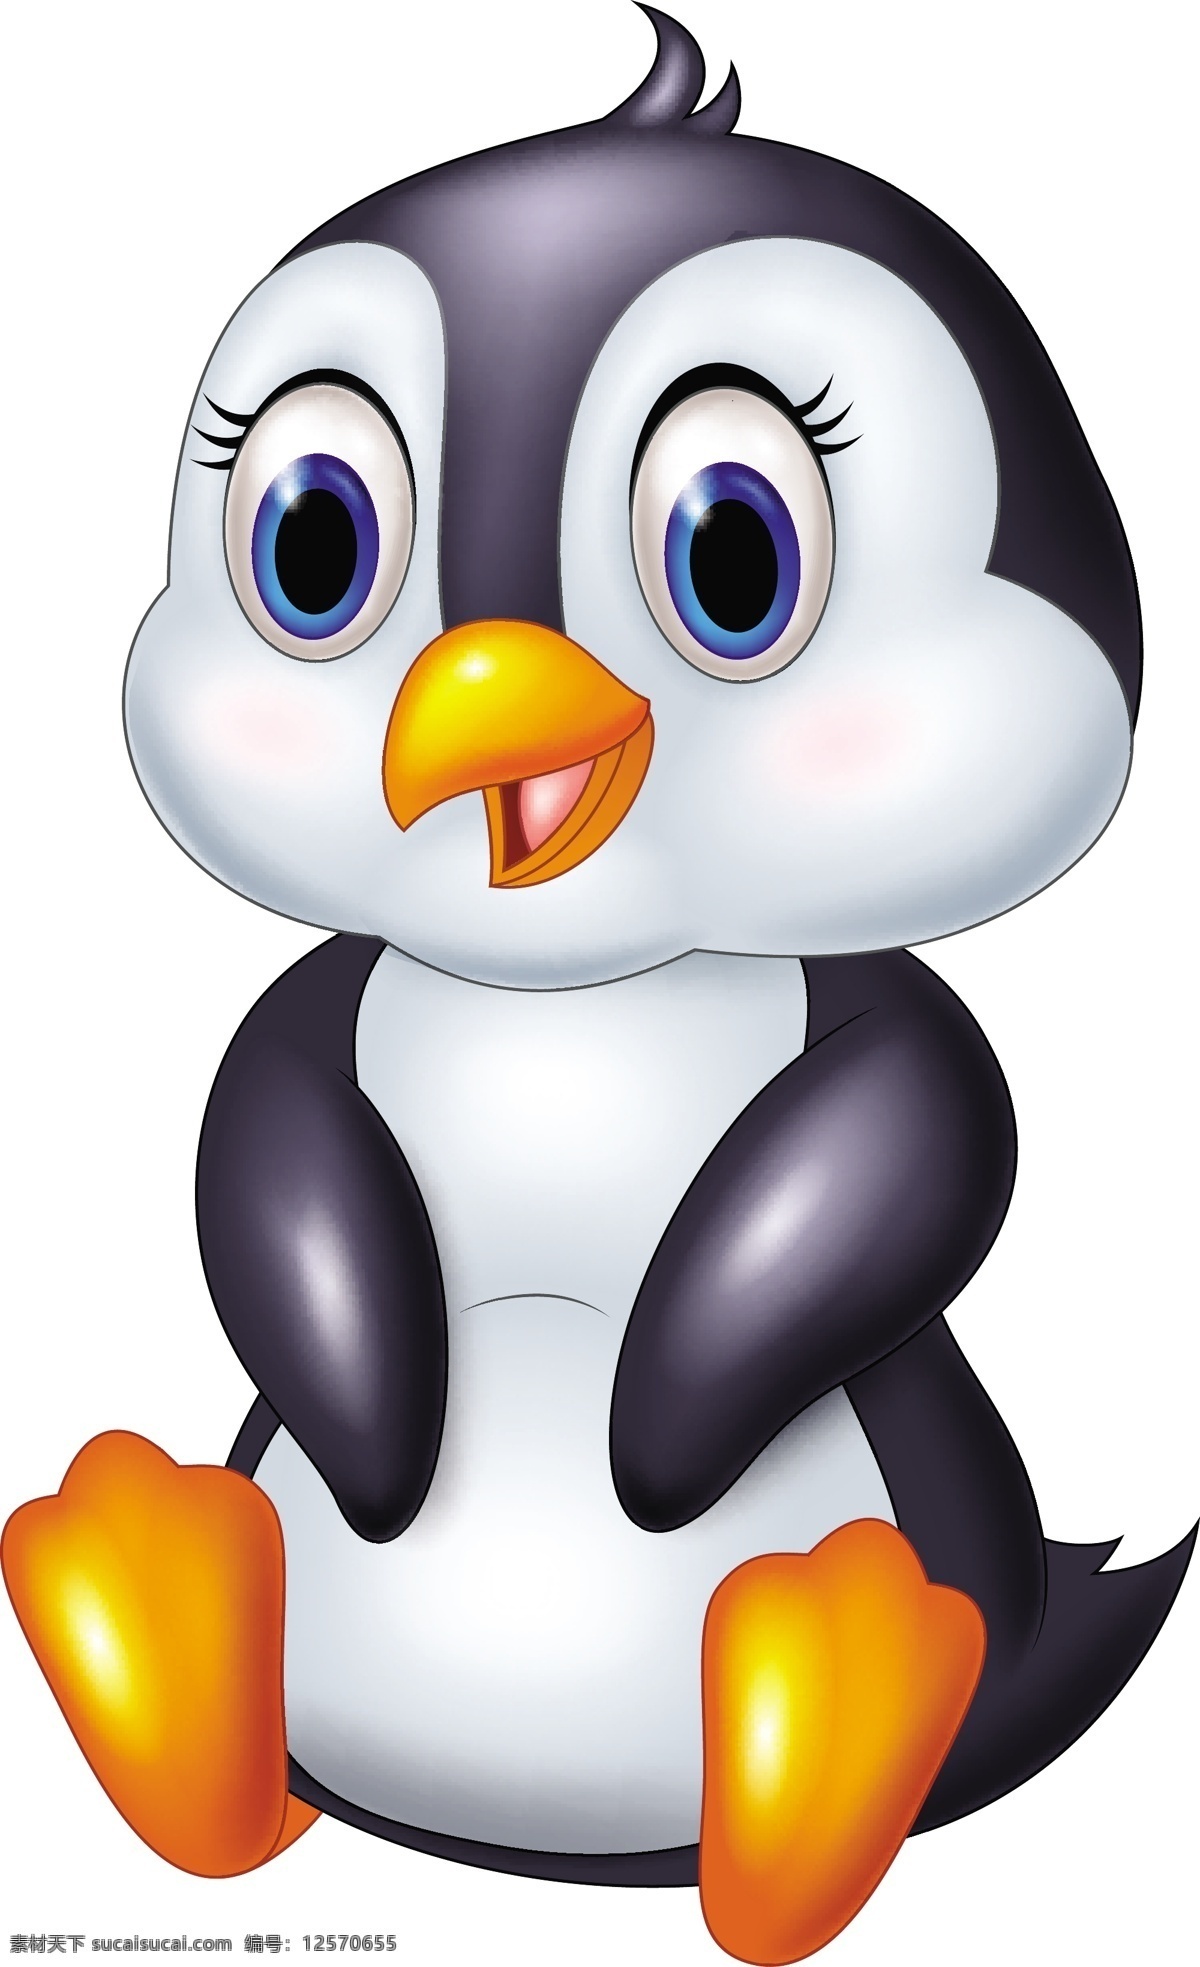 可爱 企鹅 矢量 可爱的企鹅 企鹅矢量素材 矢量企鹅 手绘企鹅 小企鹅 坐着的企鹅 卡通企鹅 动漫企鹅 卡通动漫 动漫动画